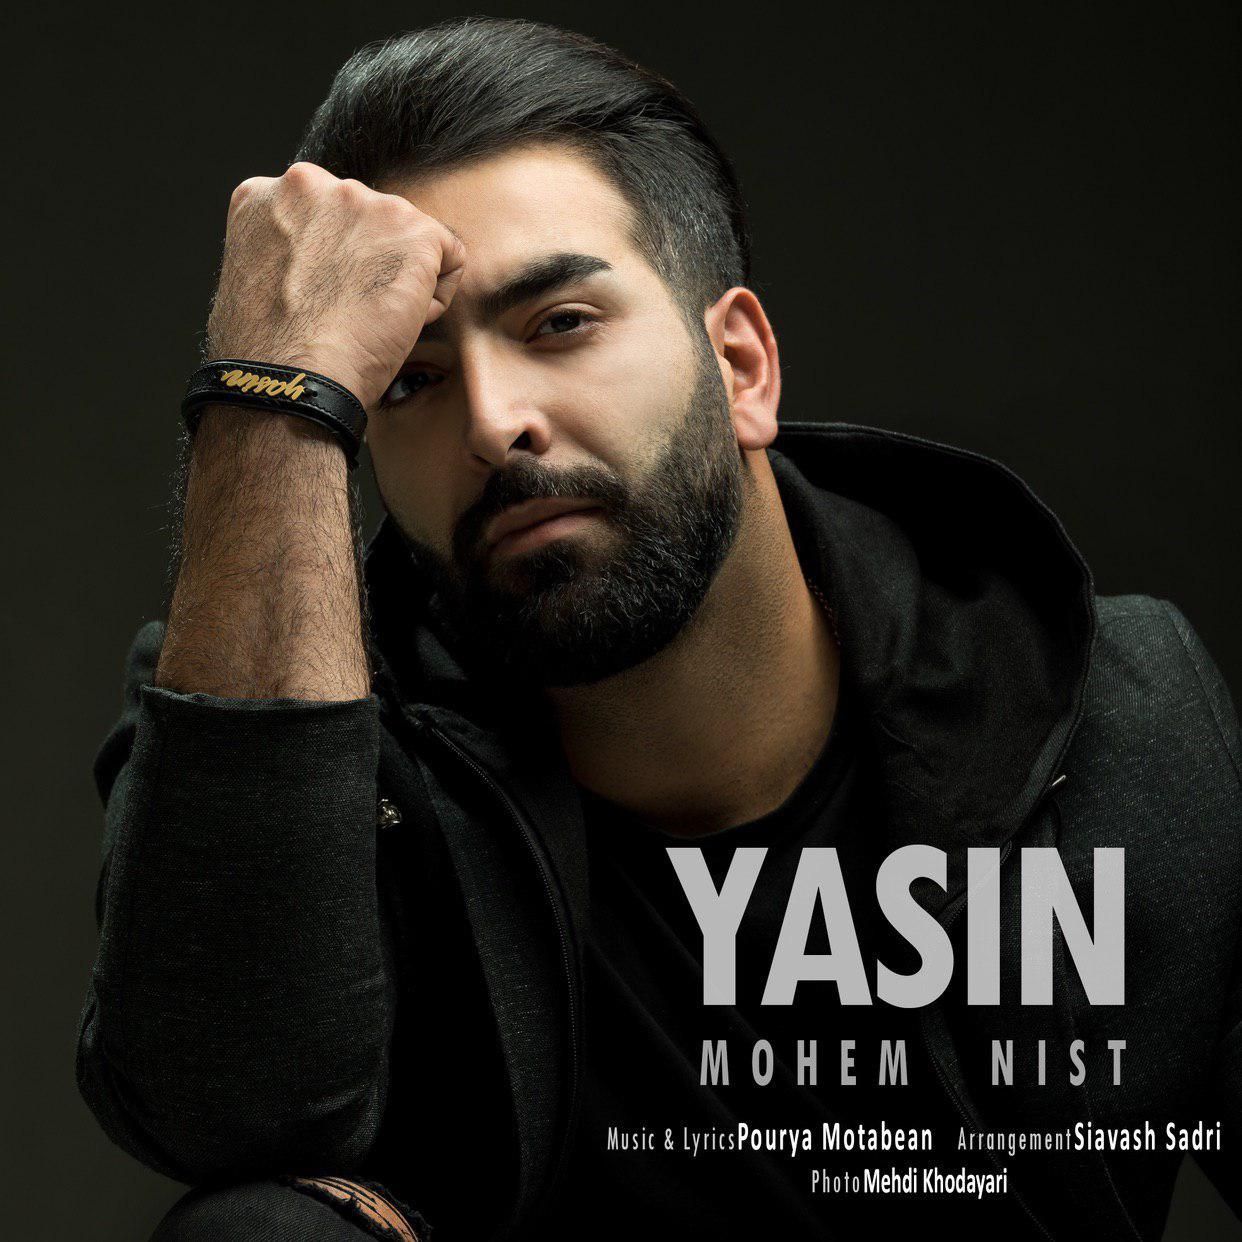  دانلود آهنگ جدید یاسین - مهم نیست | Download New Music By Yasin - Mohem Nist